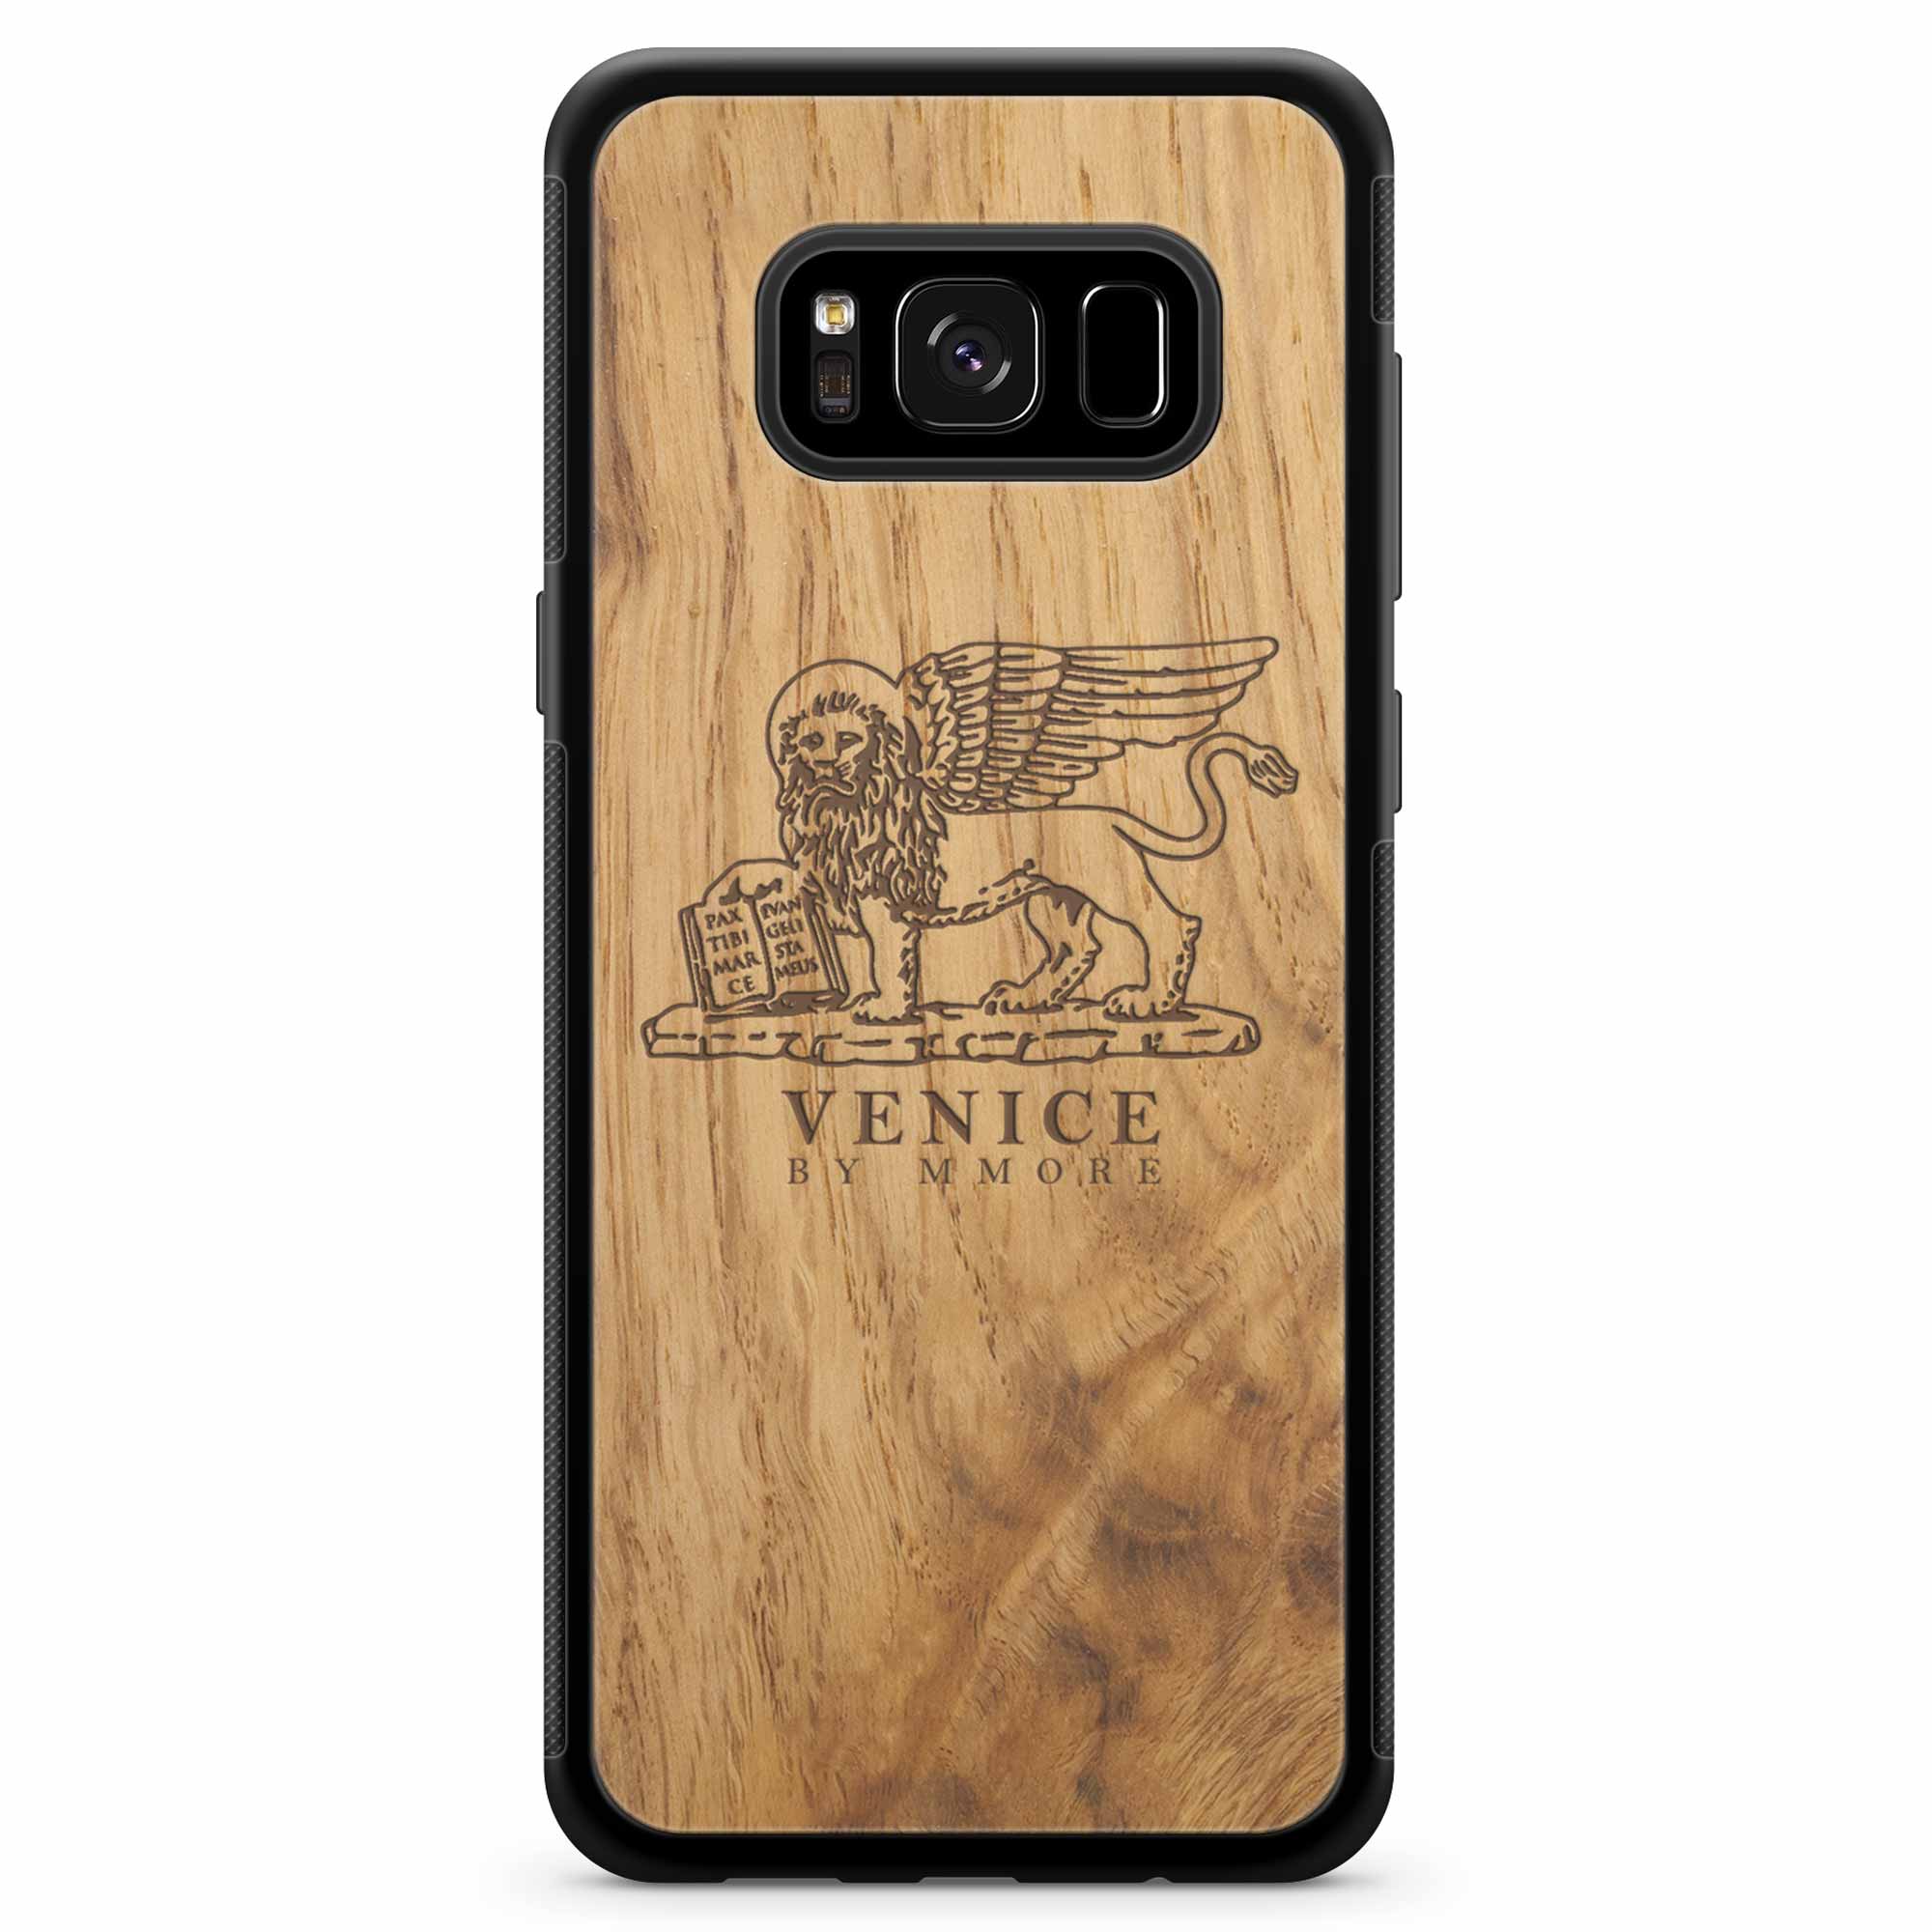 Venice Lion Samsung S8 Ancient Wood Phone Case